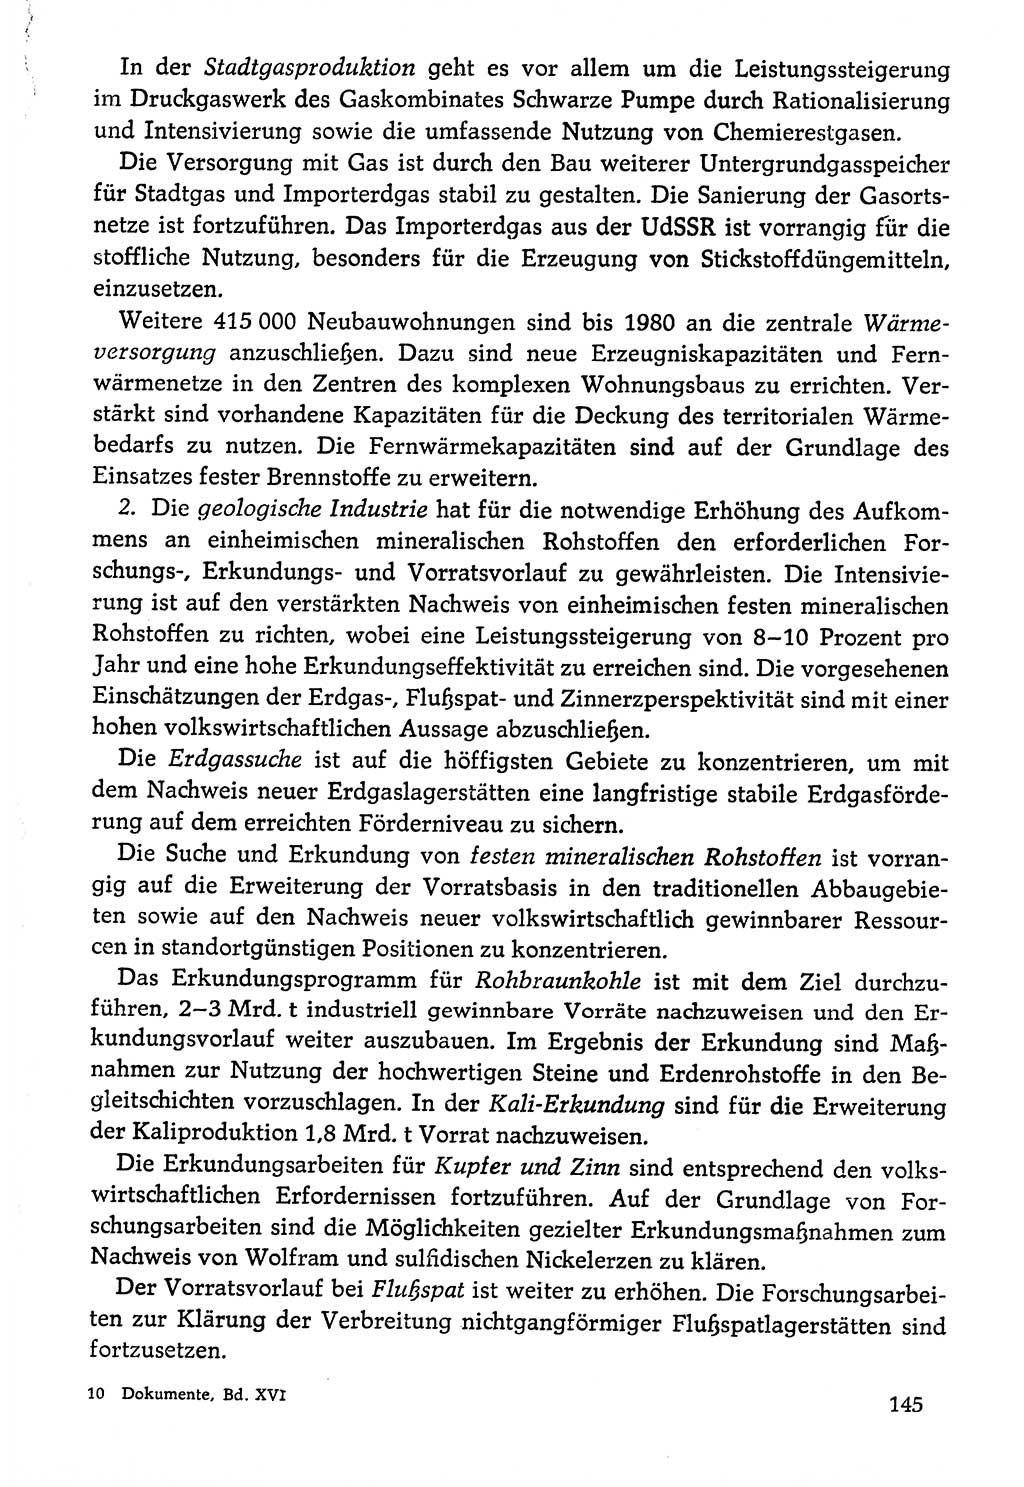 Dokumente der Sozialistischen Einheitspartei Deutschlands (SED) [Deutsche Demokratische Republik (DDR)] 1976-1977, Seite 145 (Dok. SED DDR 1976-1977, S. 145)